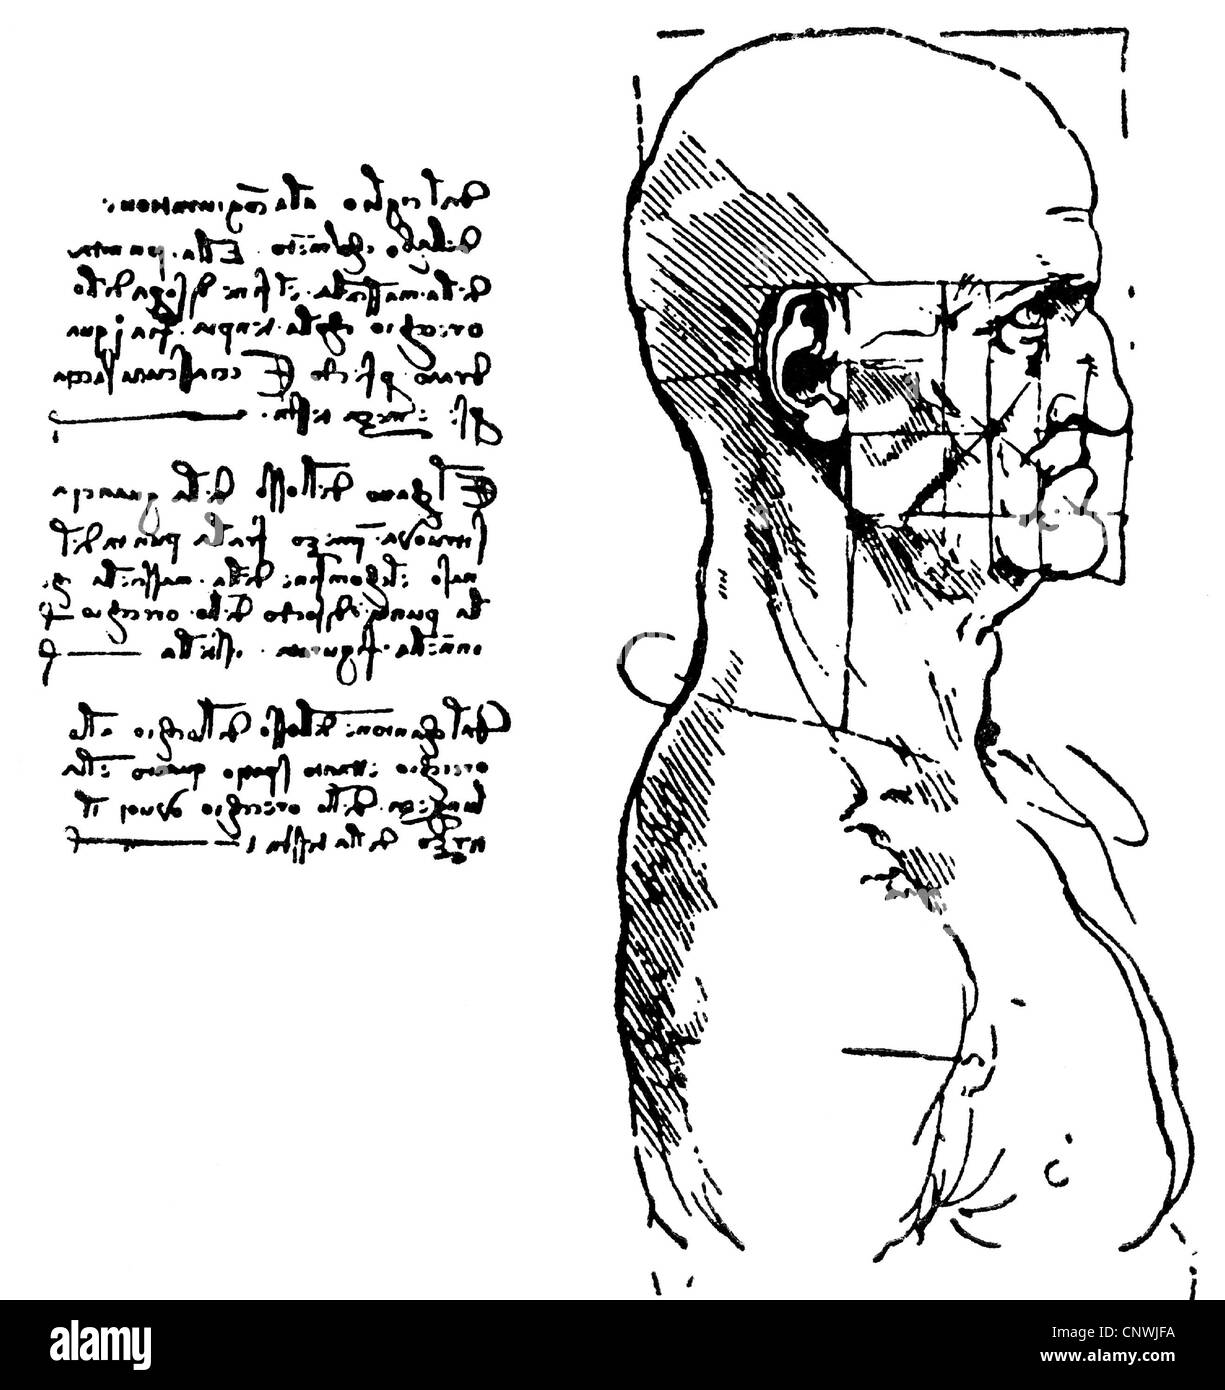 Belle arti, Leonardo da Vinci (1452 - 1519), studio delle proporzioni di una testa umana, profilo, disegno, scrittura speculare, diritti aggiuntivi-clearences-non disponibile Foto Stock